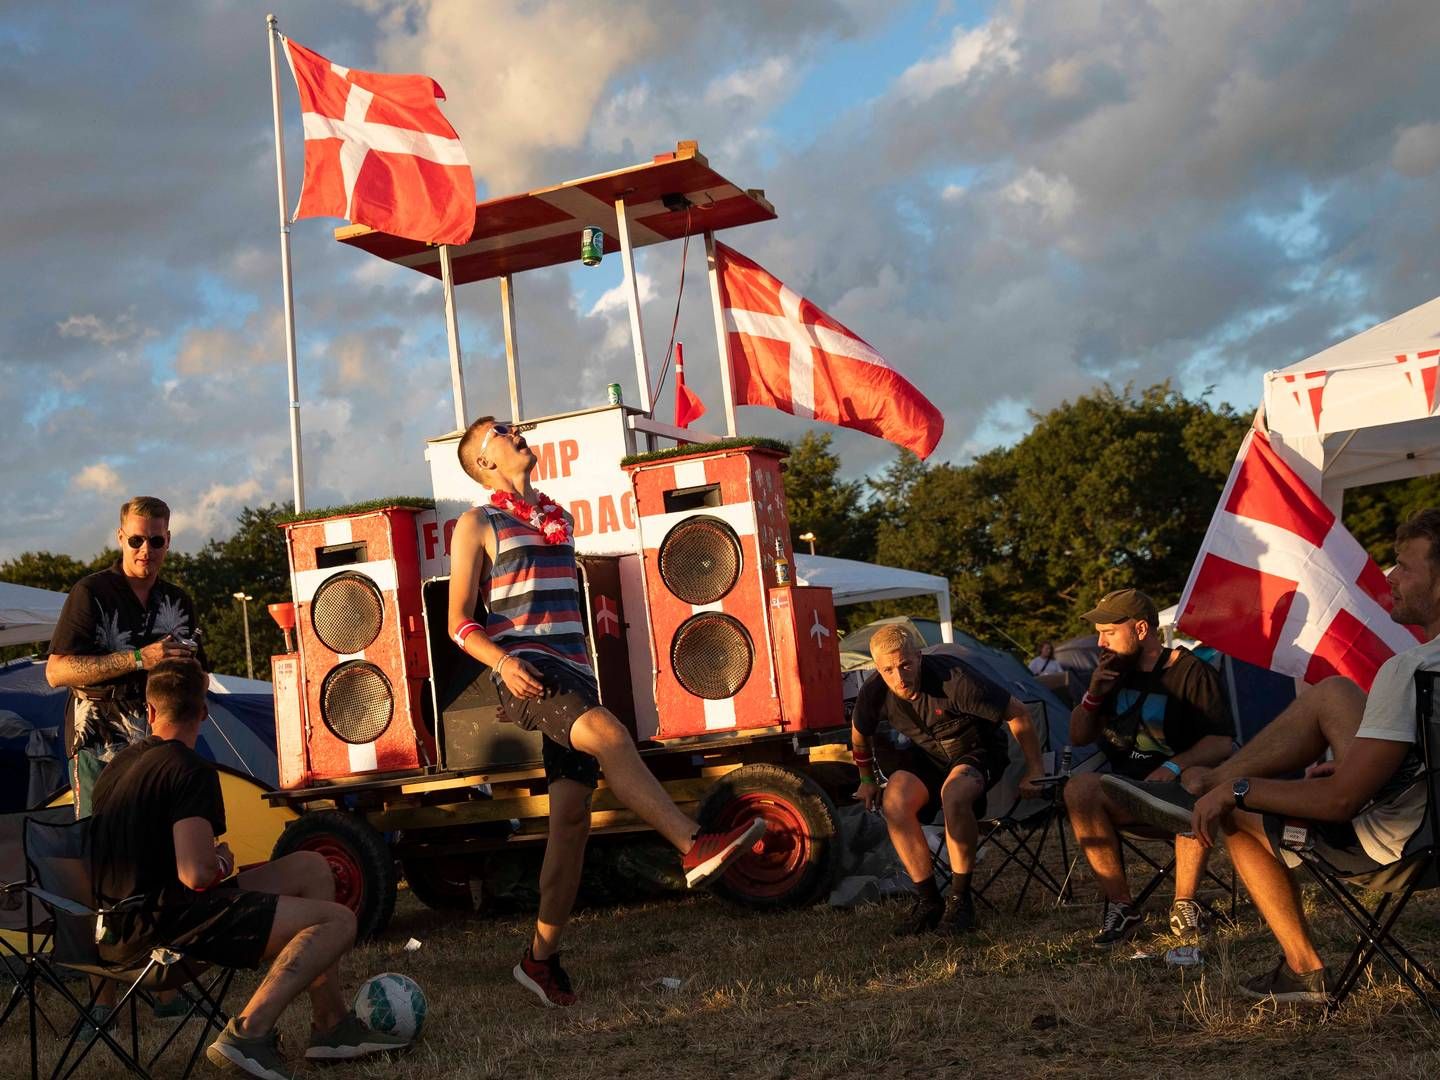 Campingområdet på Roskilde Festival åbnede lørdag d. 30. juni 2018. Festivalen lukker ned igen søndag d. 8. juli. | Foto: Ritzau Scanpix/Olafur Steinar Gestsson